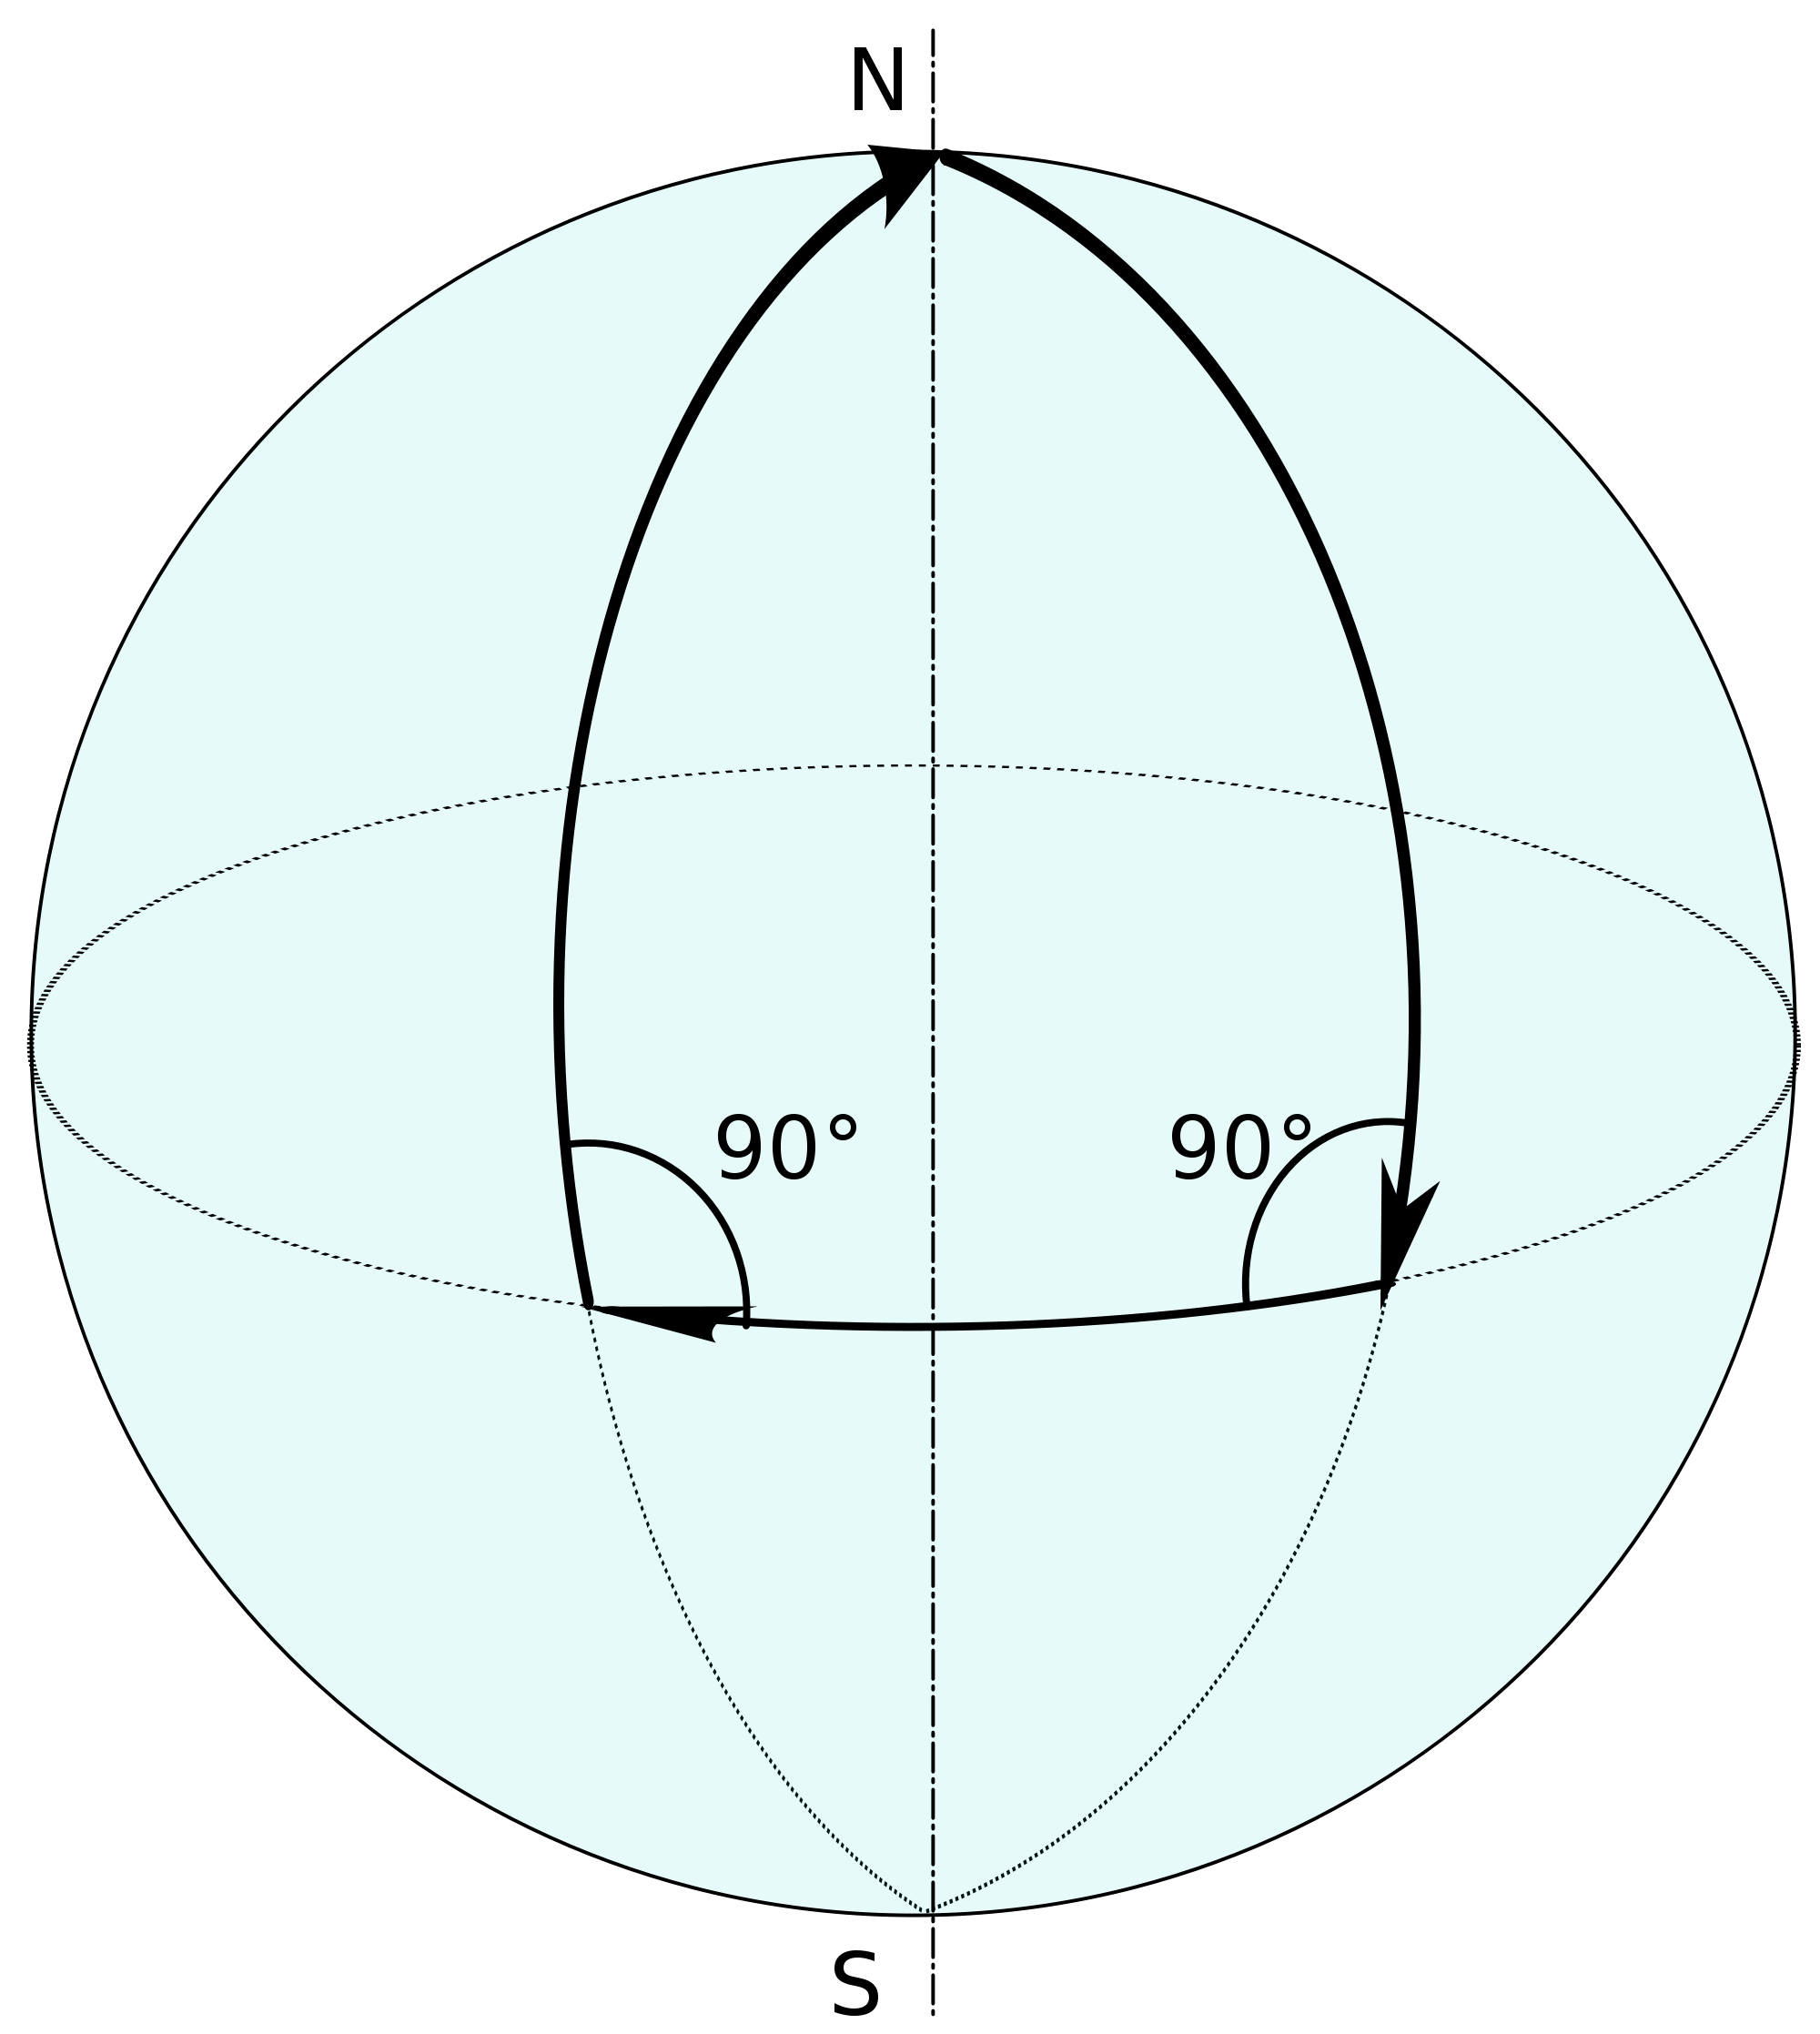 Шар формы треугольника. Эллиптическая геометрия Римана. Сфера Римана. Сферические фигуры. Сферическая геометрия.